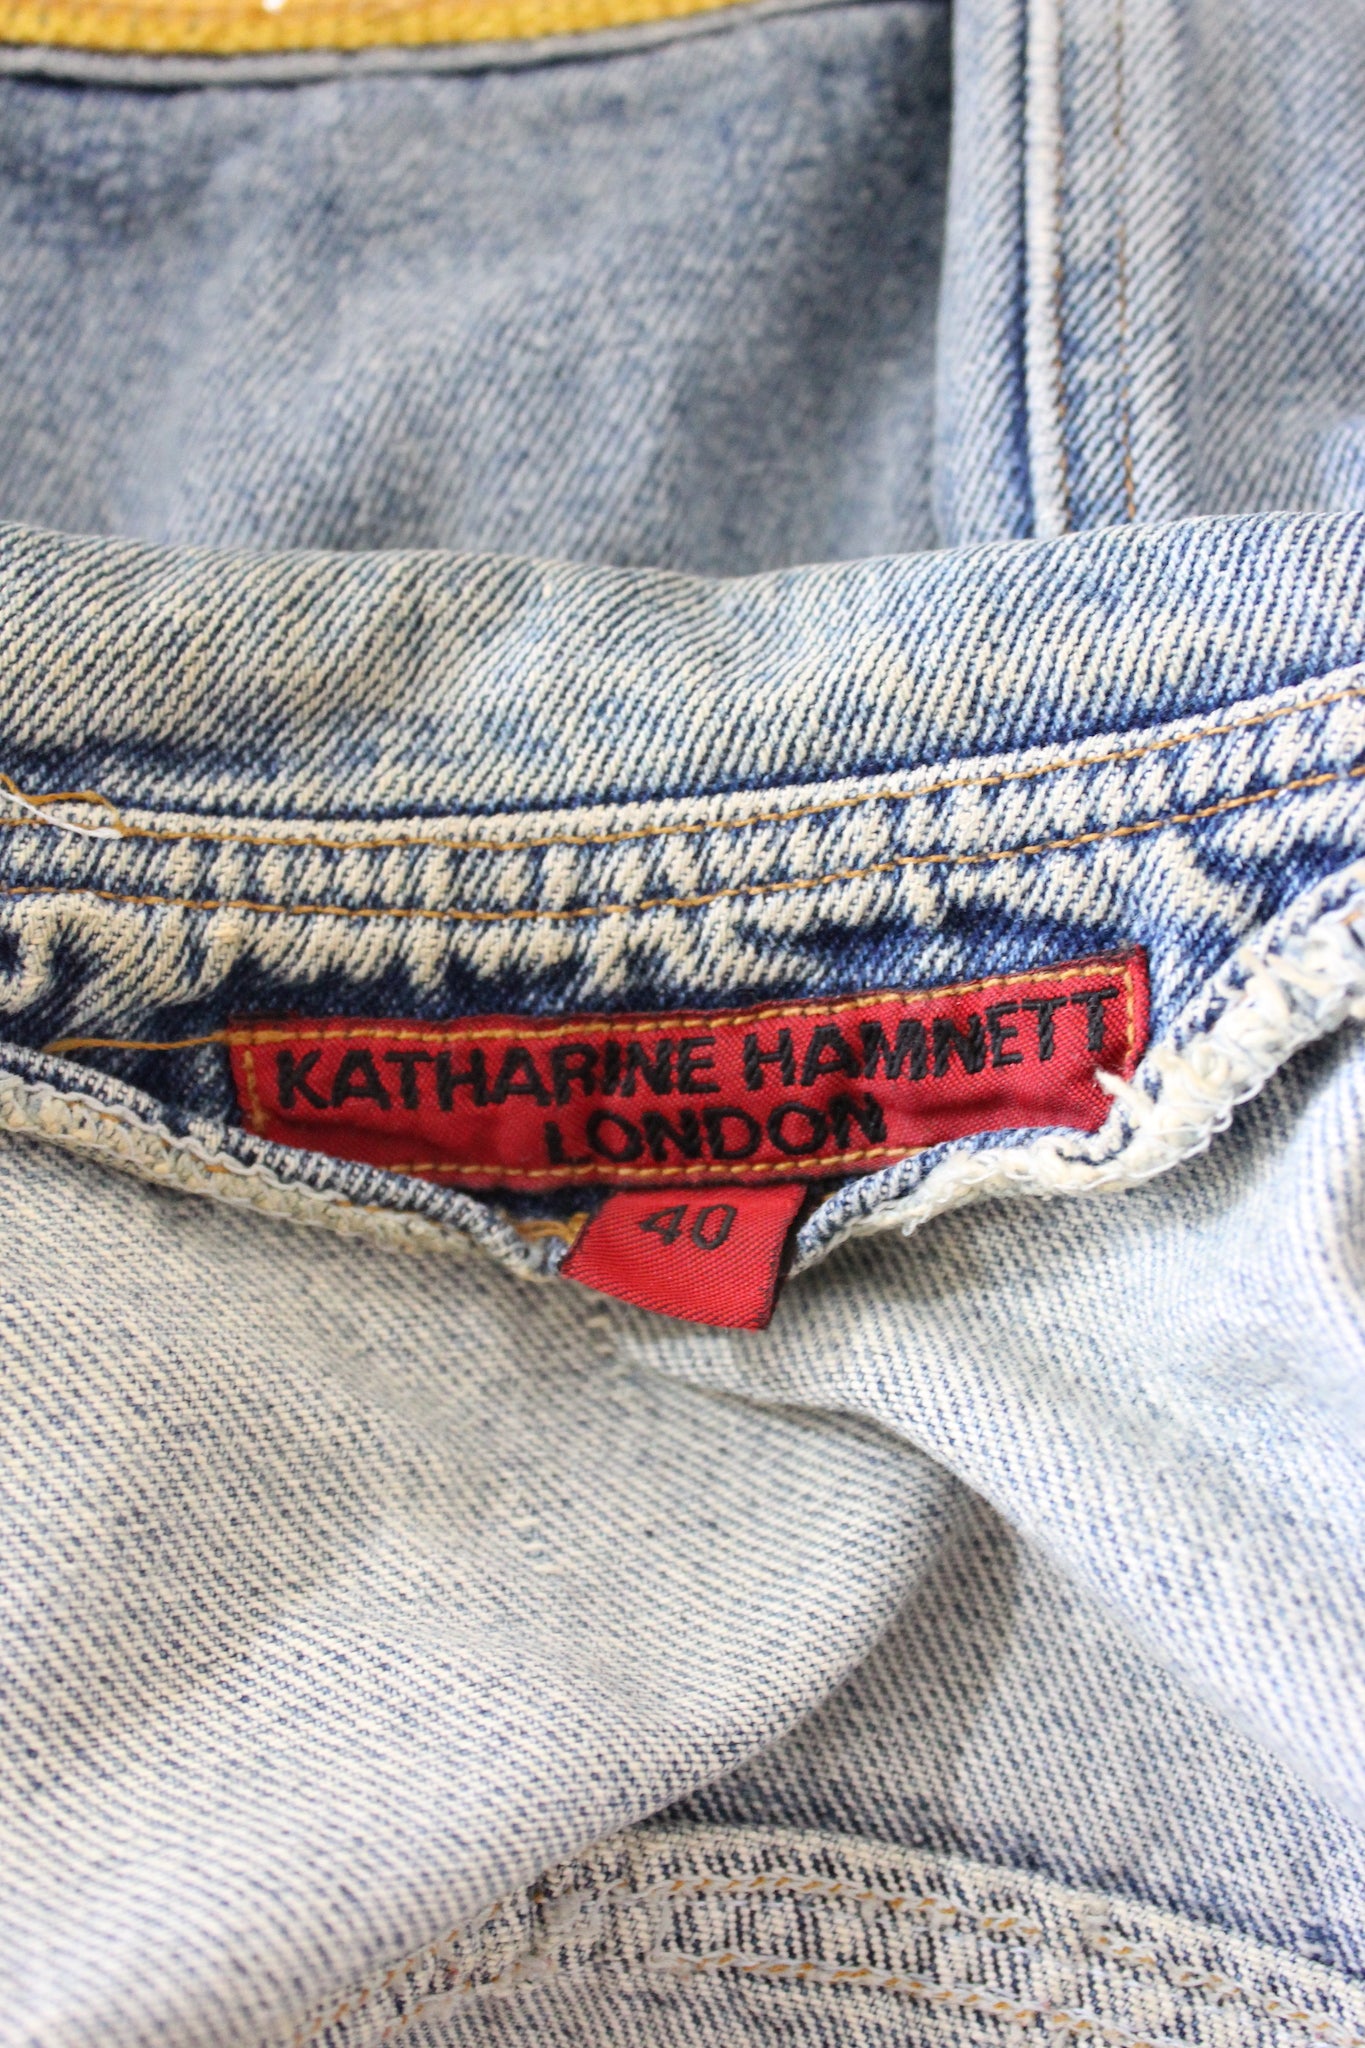 Katharine Hamnett Jeans Golden Fringes Jacket Vintage 90s